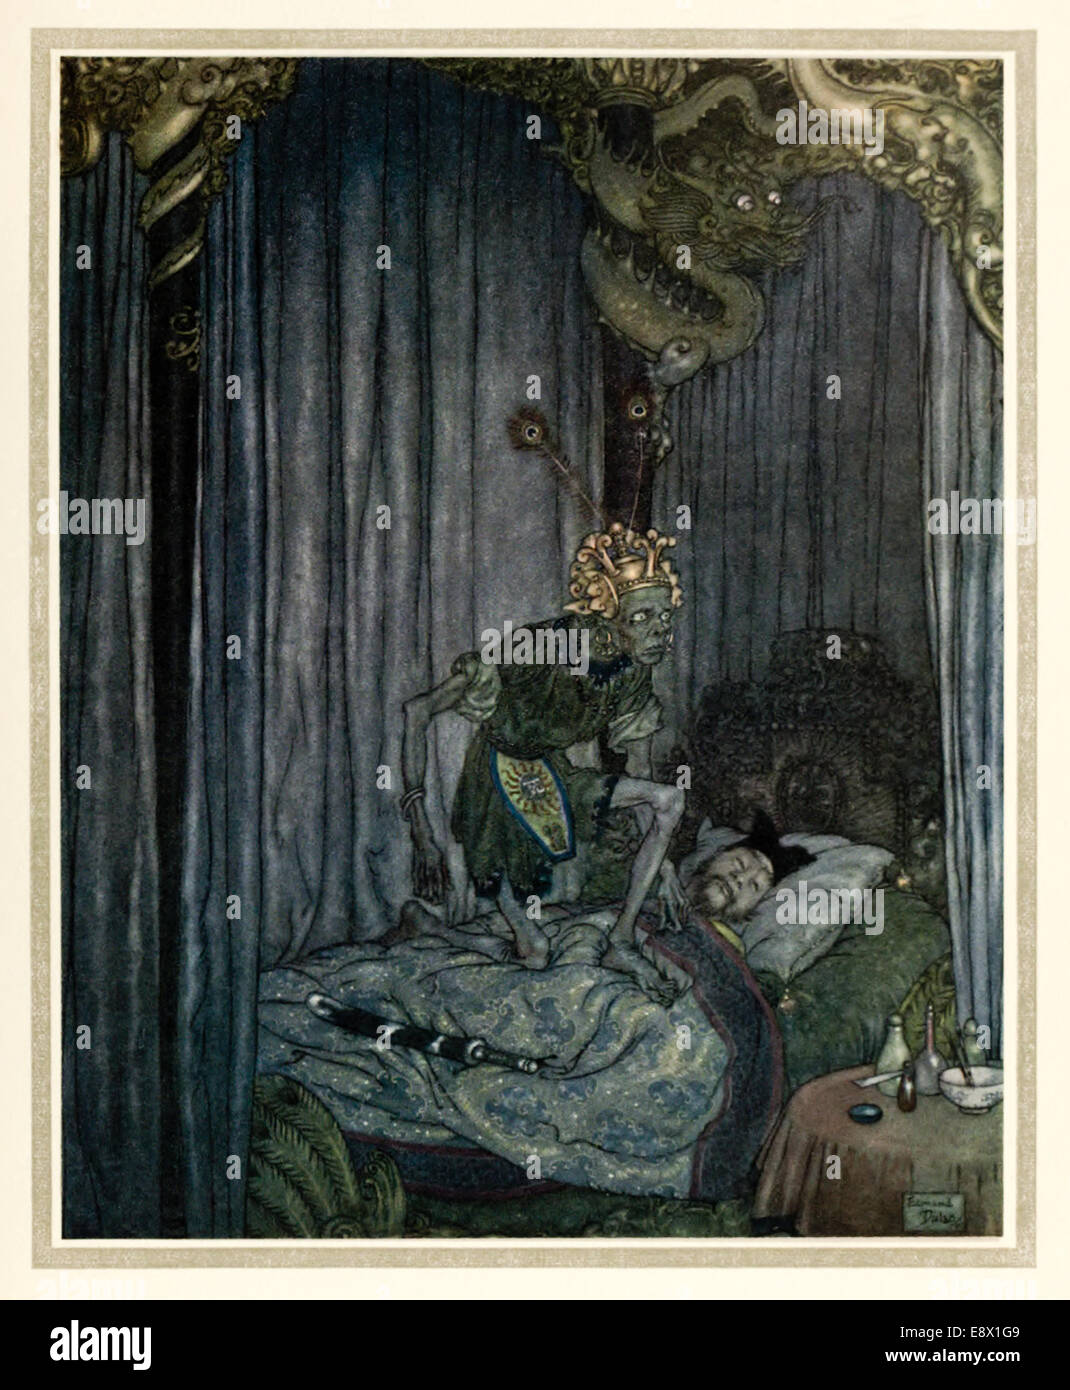 Il nightingale - Edmund Dulac (1882-1953) illustrazione da "Stories da Hans Andersen". Vedere la descrizione per maggiori informazioni. Foto Stock